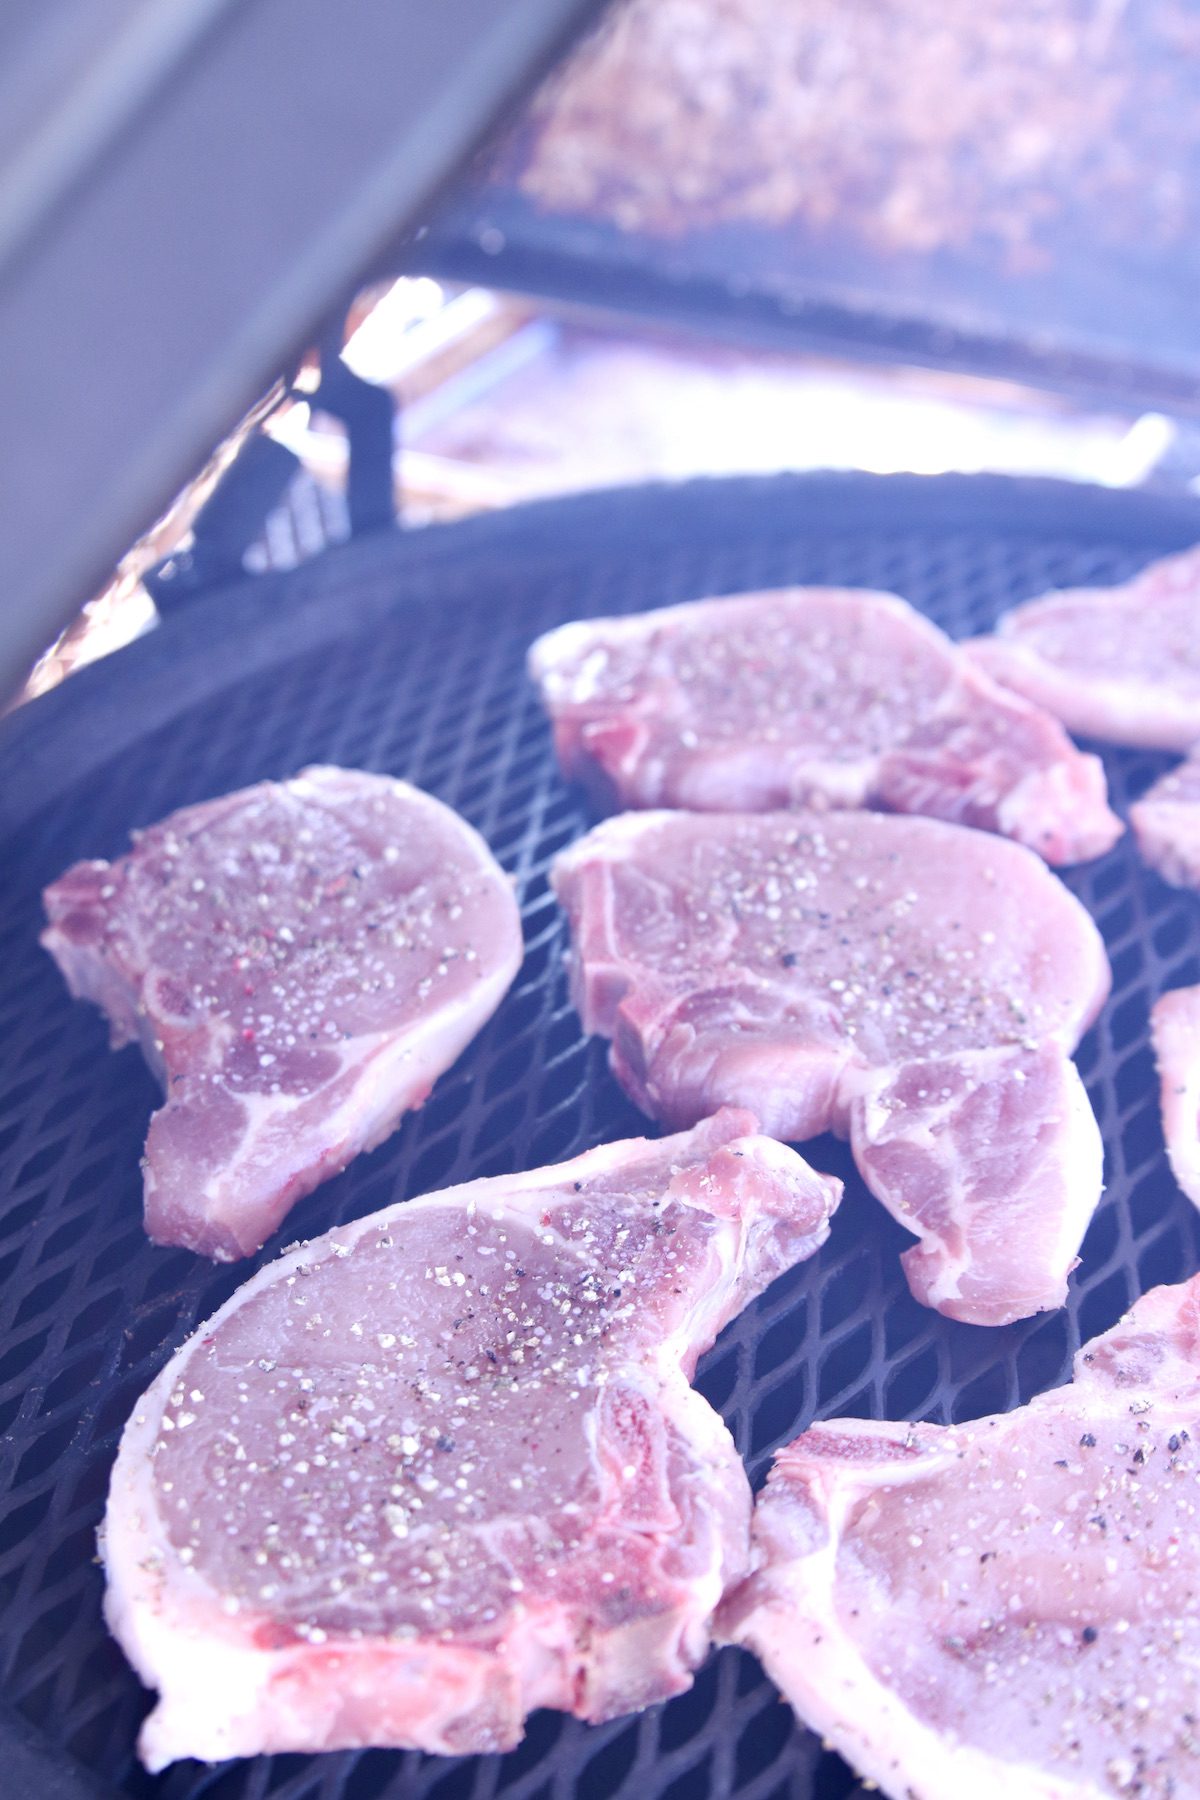 bone in pork chops on a grill.